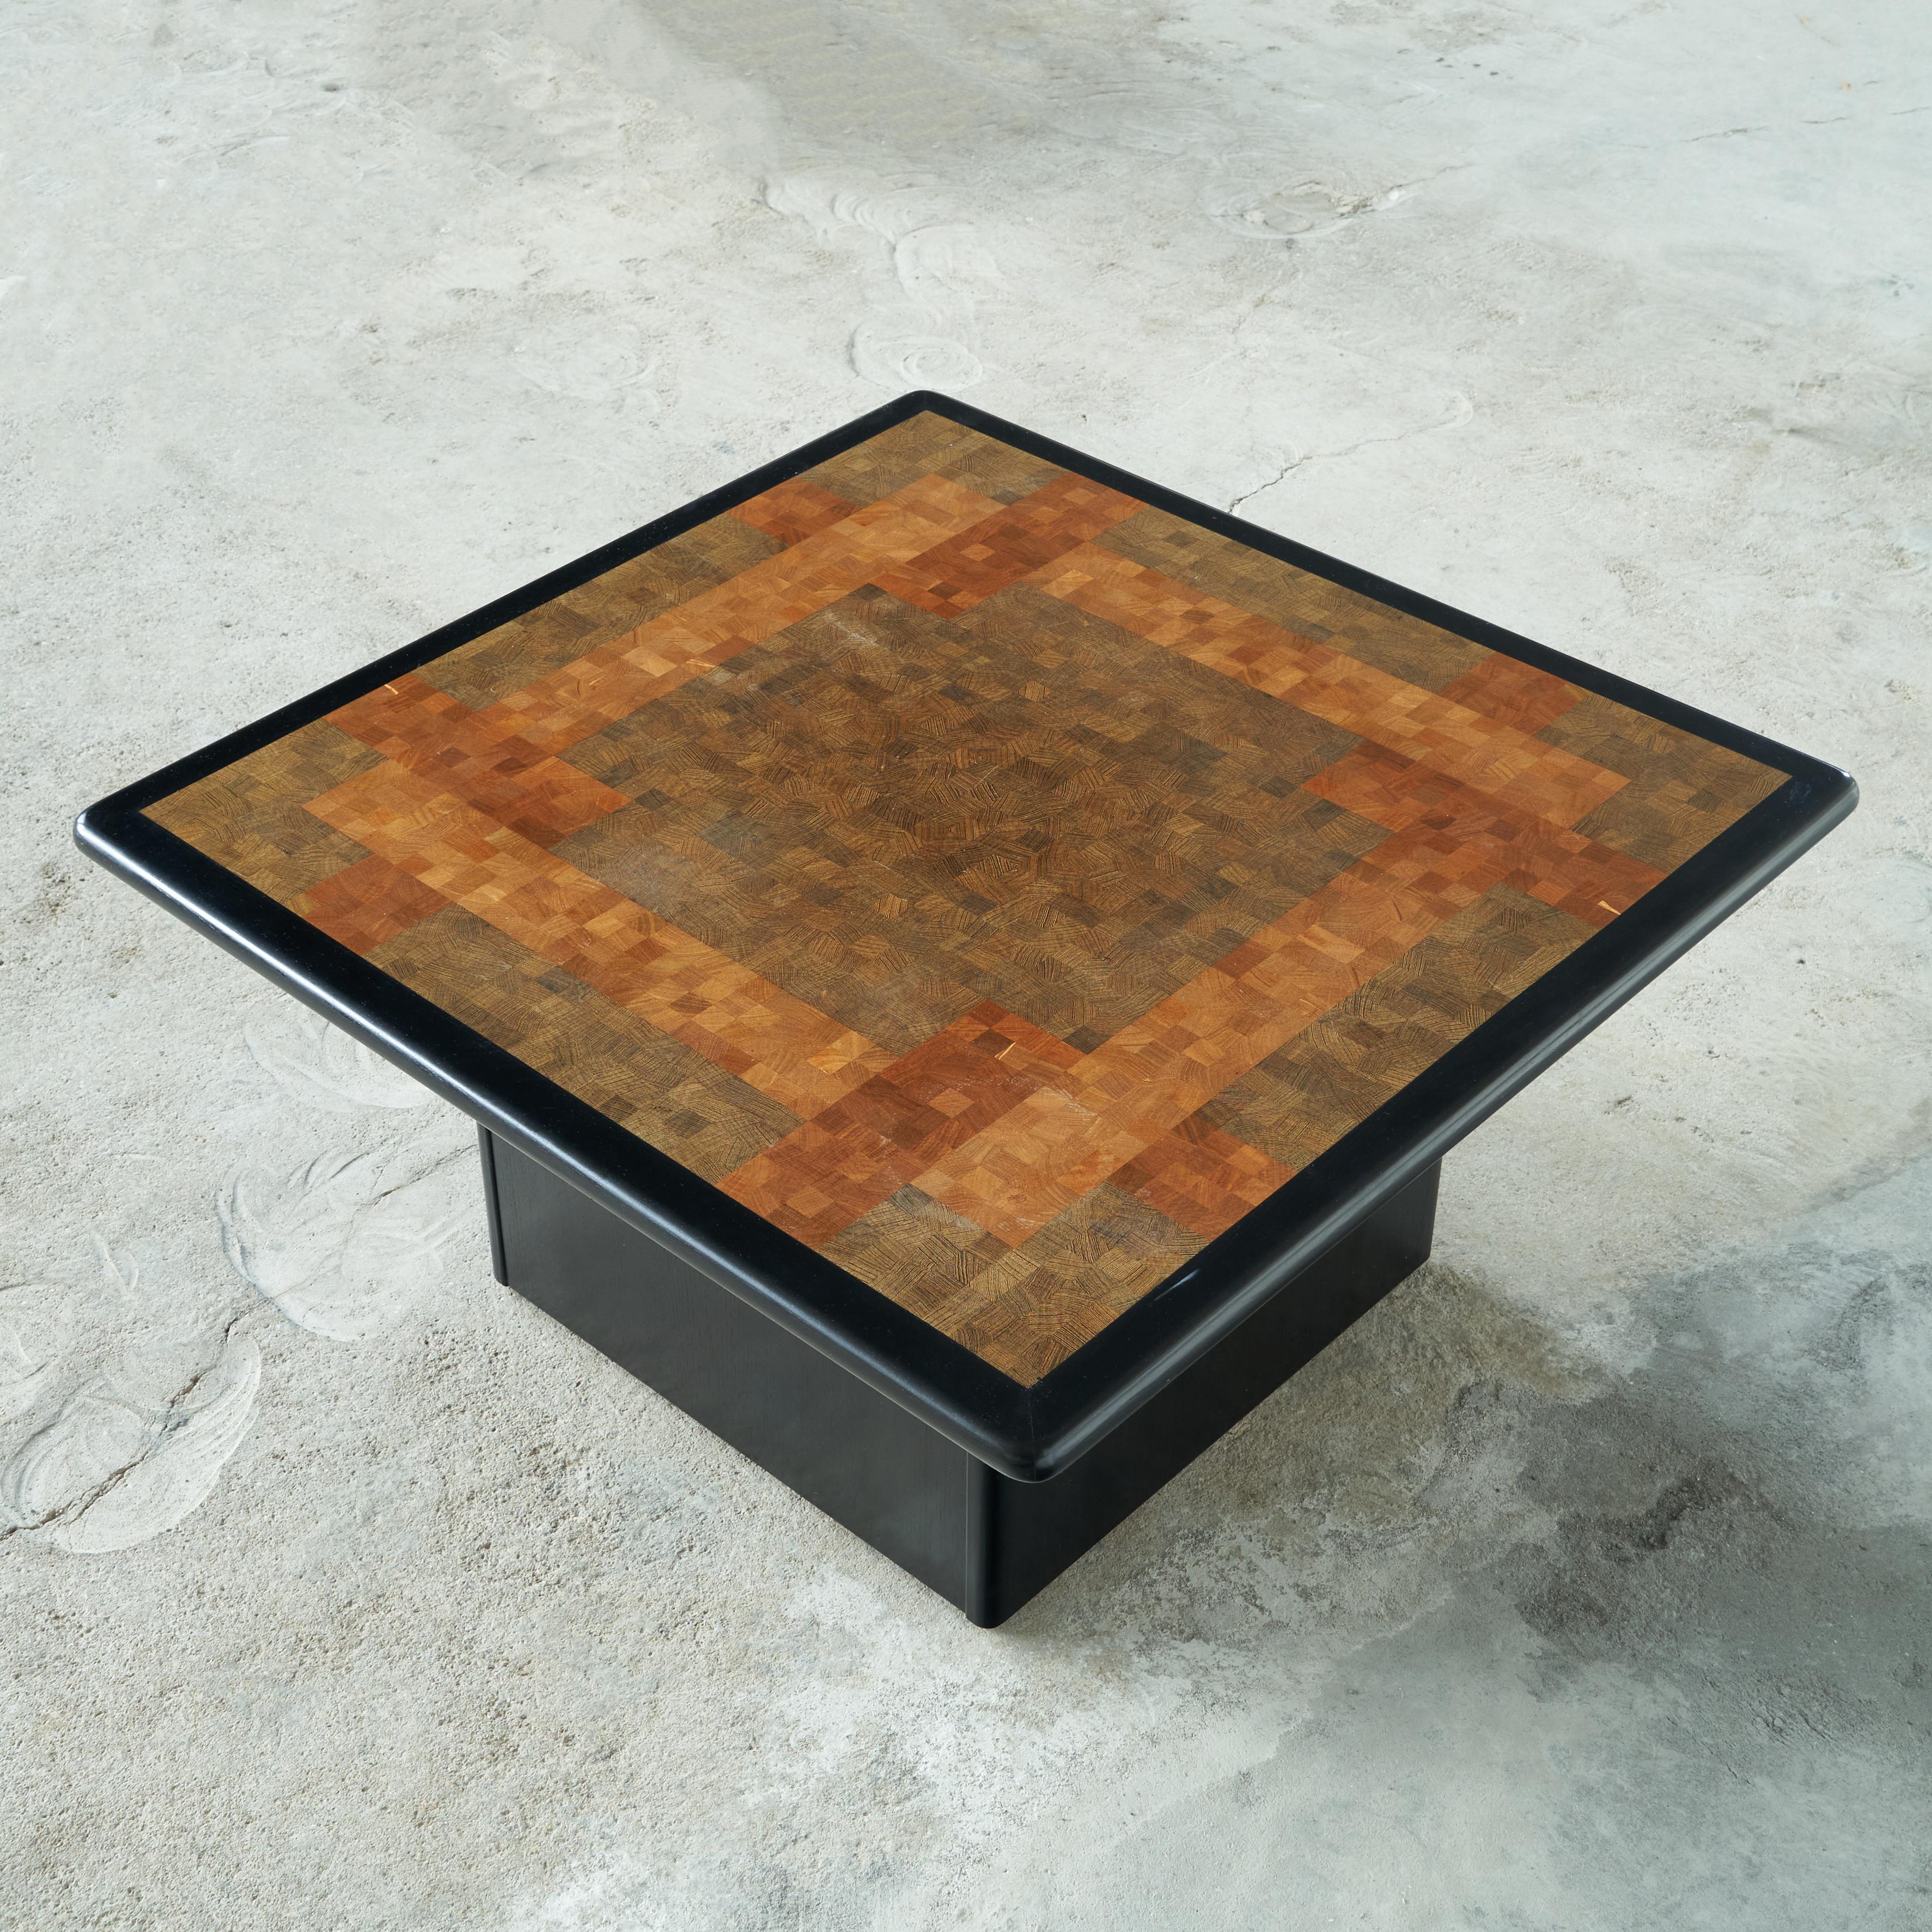 Table basse Rolf Middelboe & Gorm Lindum End-Grain Mosaic pour Tranekaer Danemark. Fin du 20e siècle. 

Il s'agit d'une table basse très intéressante avec une mosaïque de bois de bout incrusté. Ces pièces colorées sont incrustées d'un motif très